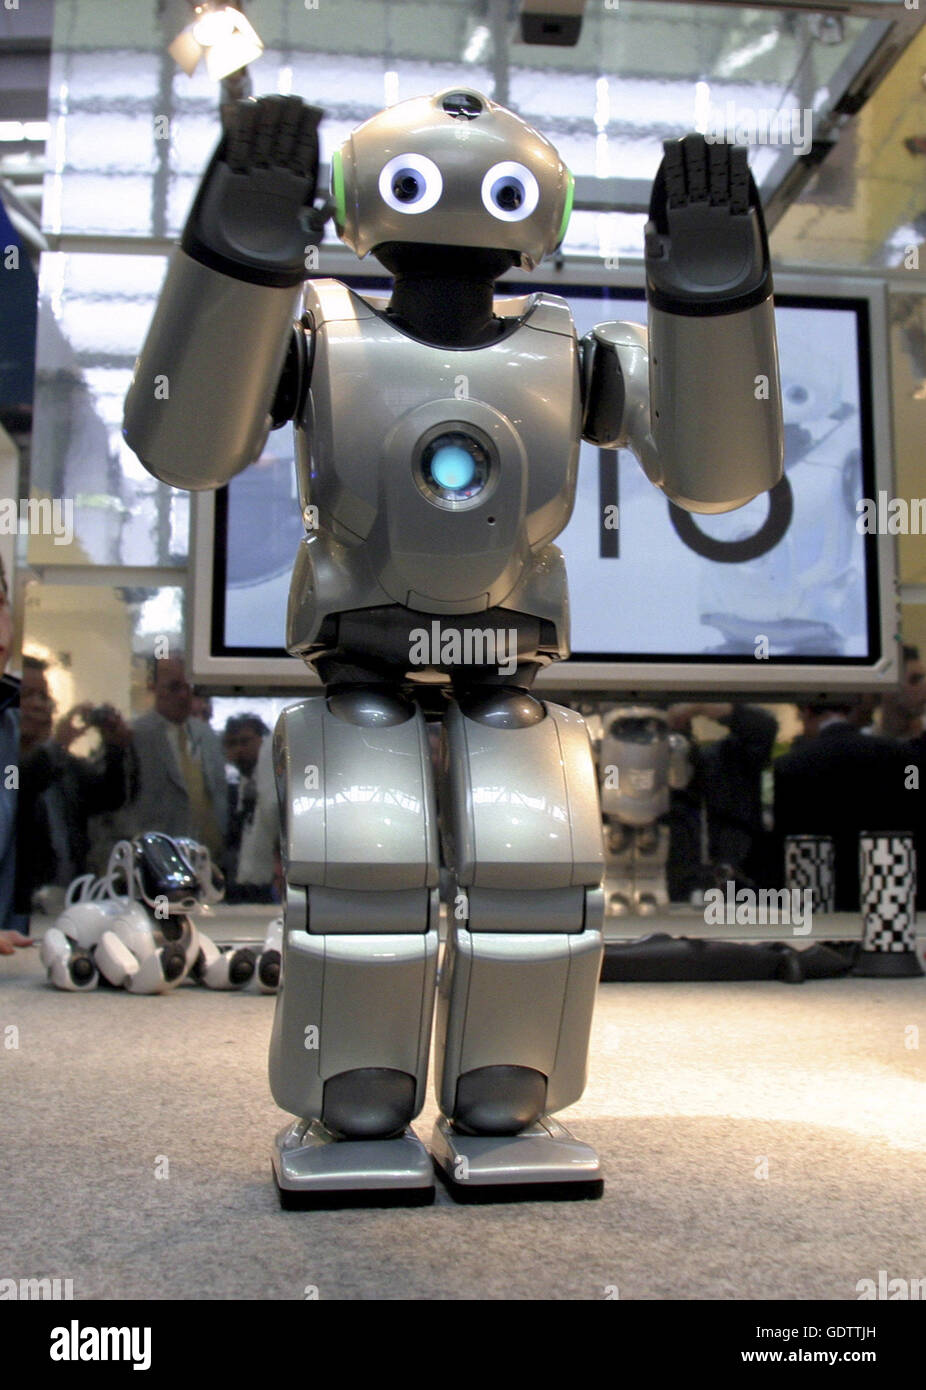 The Sony QRIO robot Stock Photo